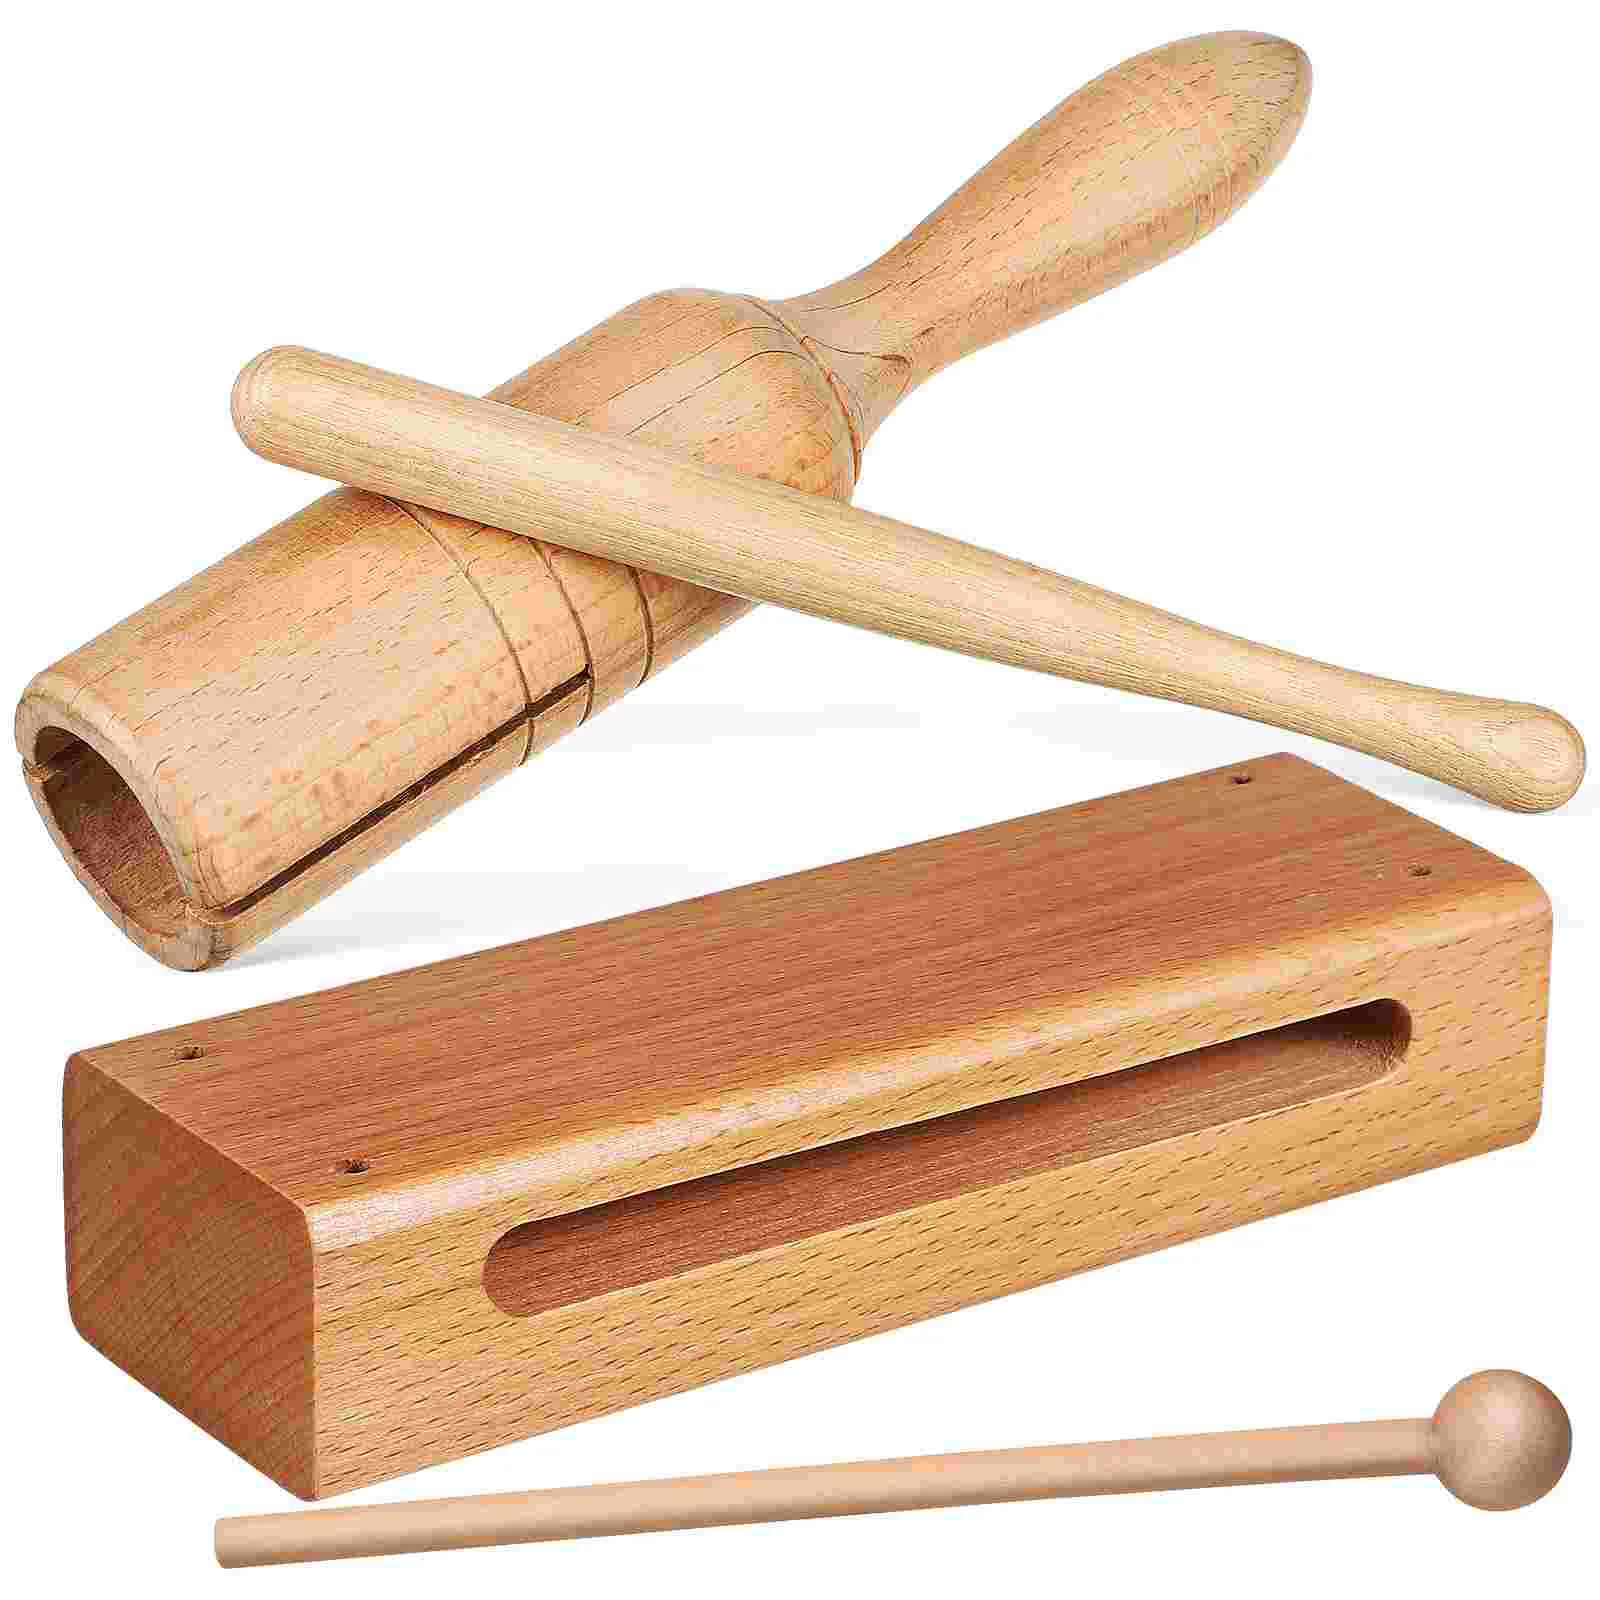 

2 комплекта Orff инструмент деревянный блок с маллетами деревянный ритм Маленькие Ручные блоки перкуссионный измельчитель